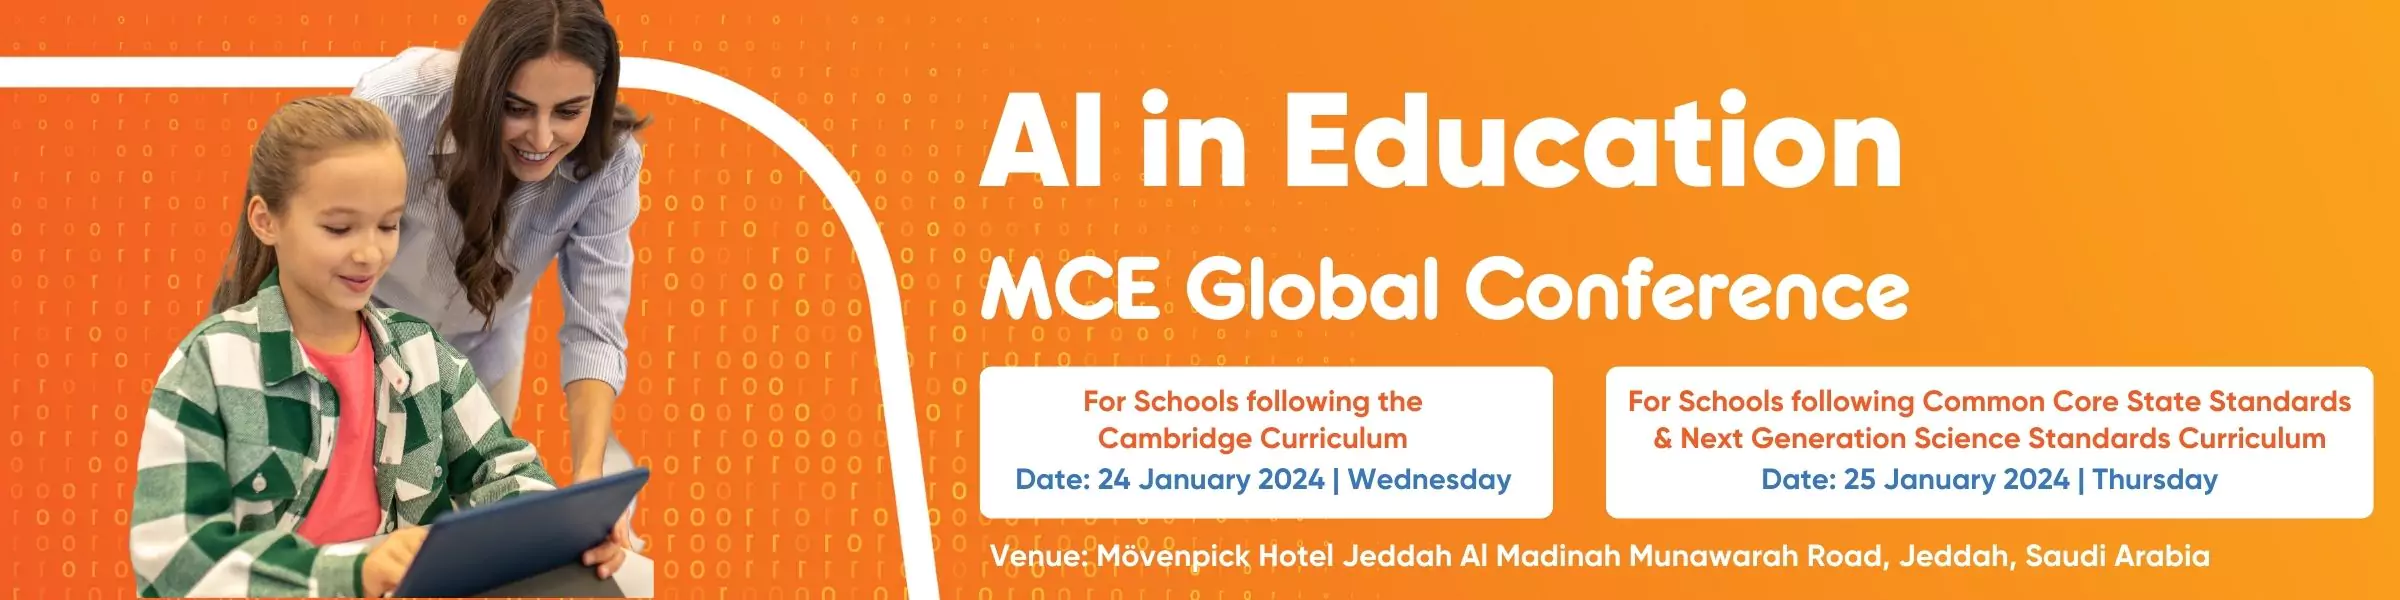 mce-global-conference-jeddah